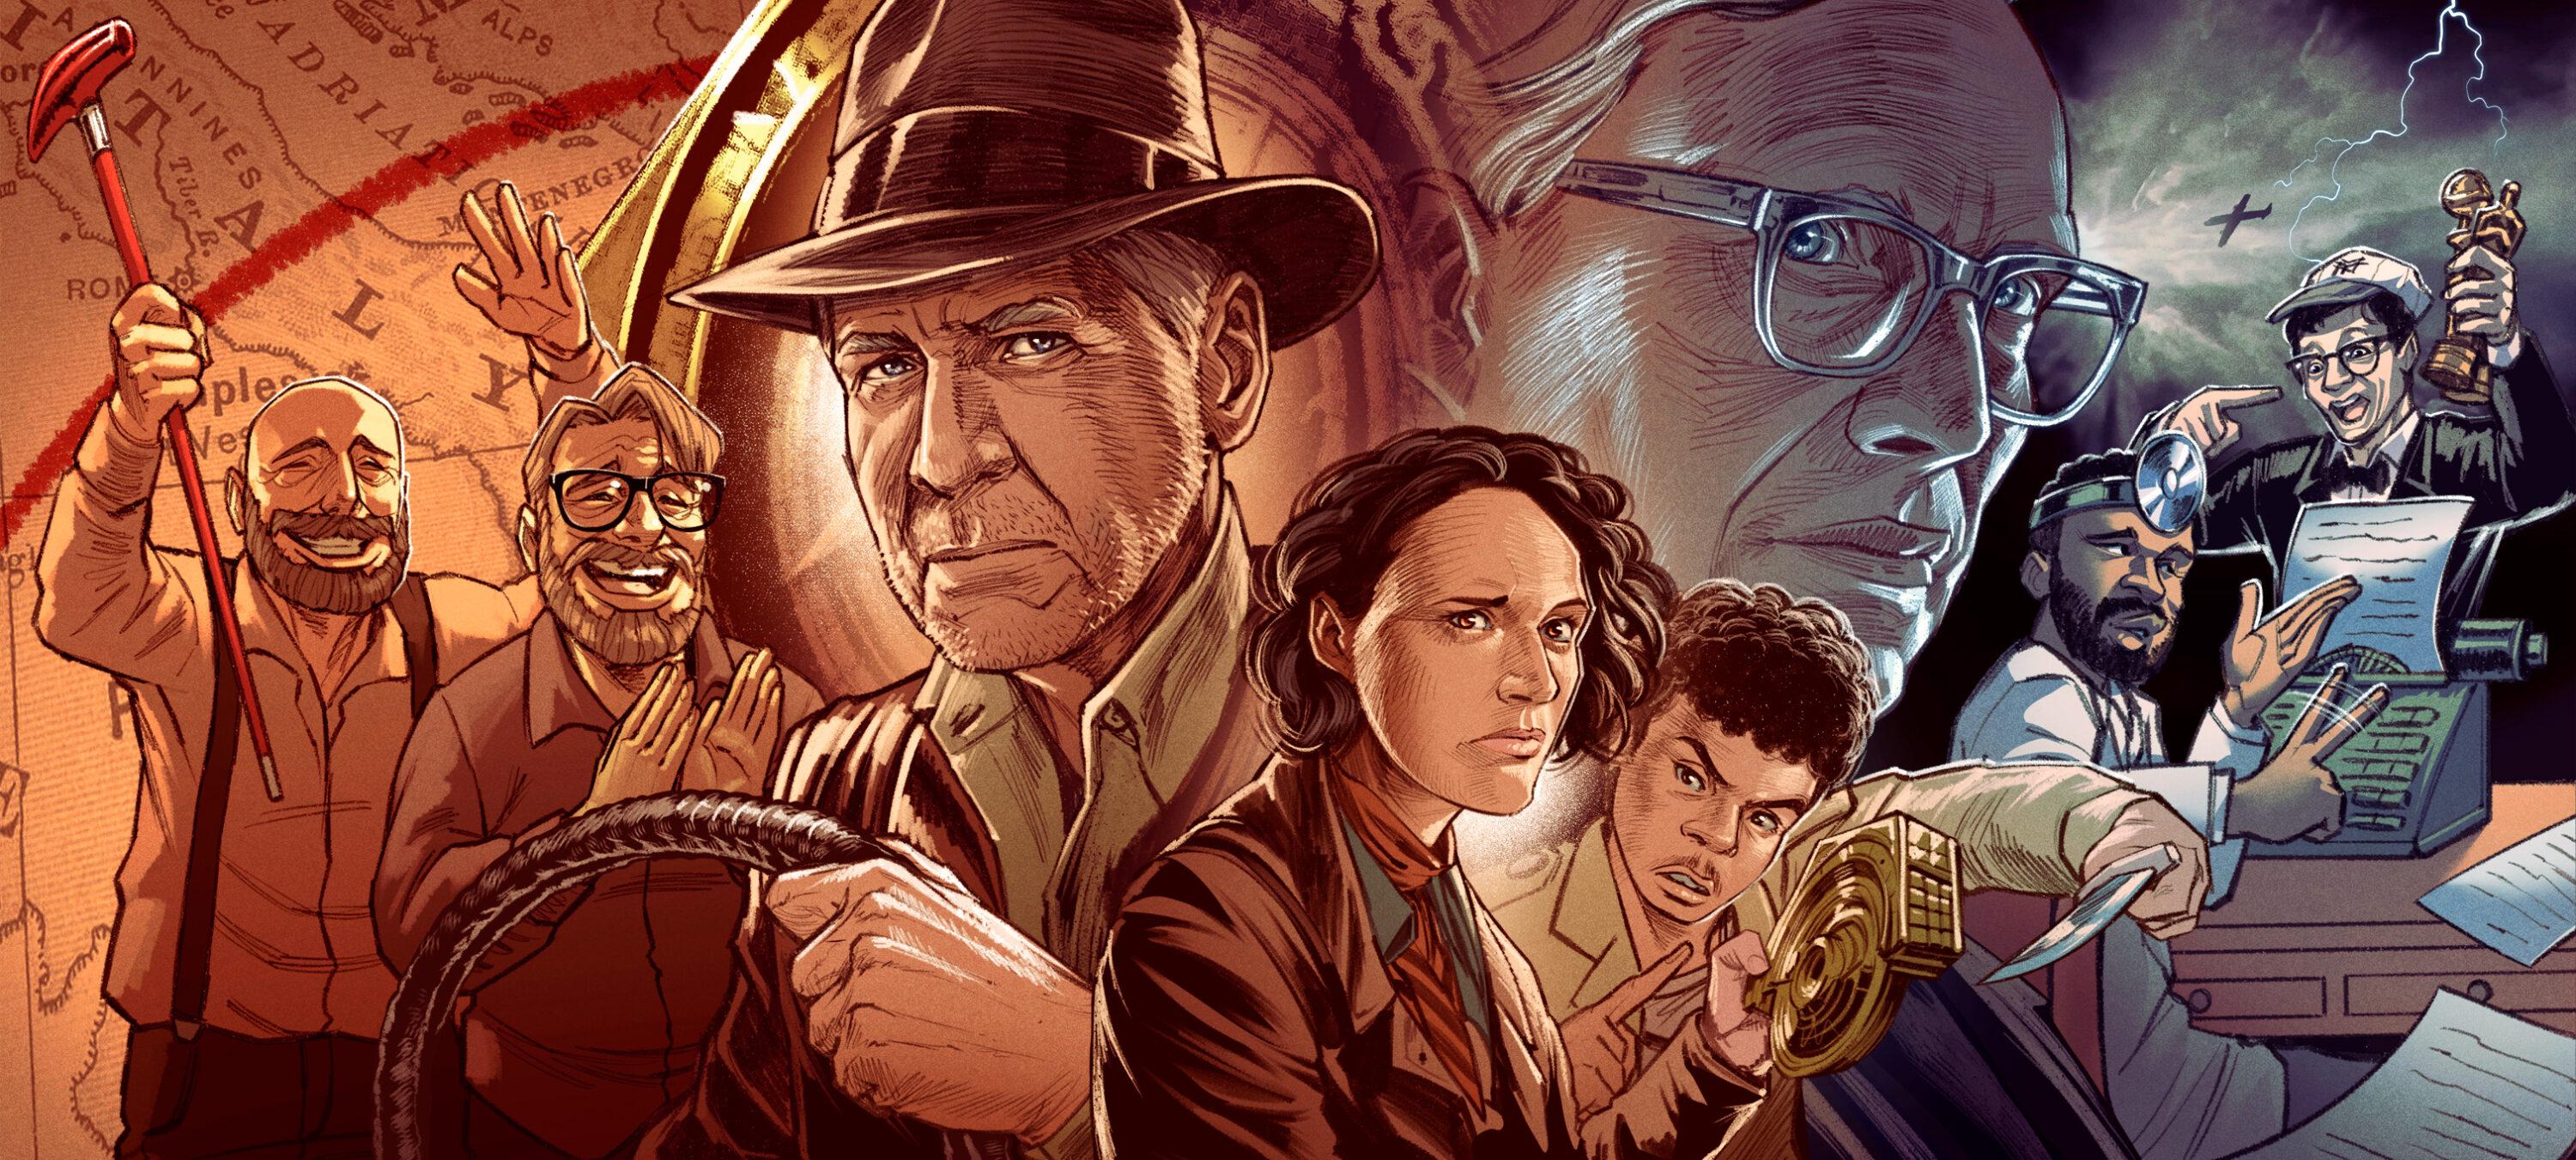 Indiana Jones e os caçadores da nostalgia perdida